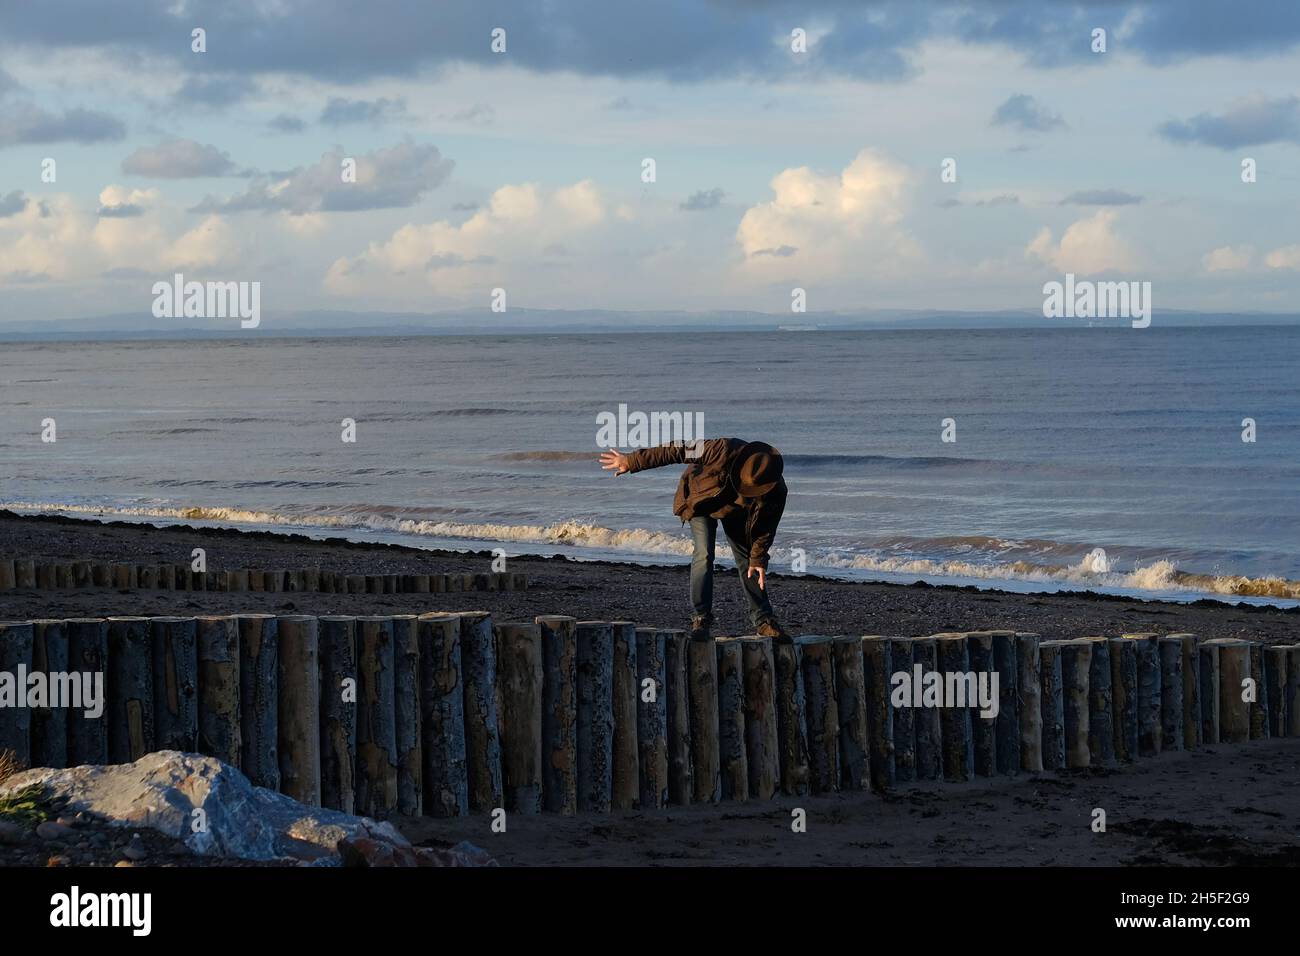 Un homme plus âgé qui se balance, qui marche sur une groyne en bois sur une plage. Banque D'Images